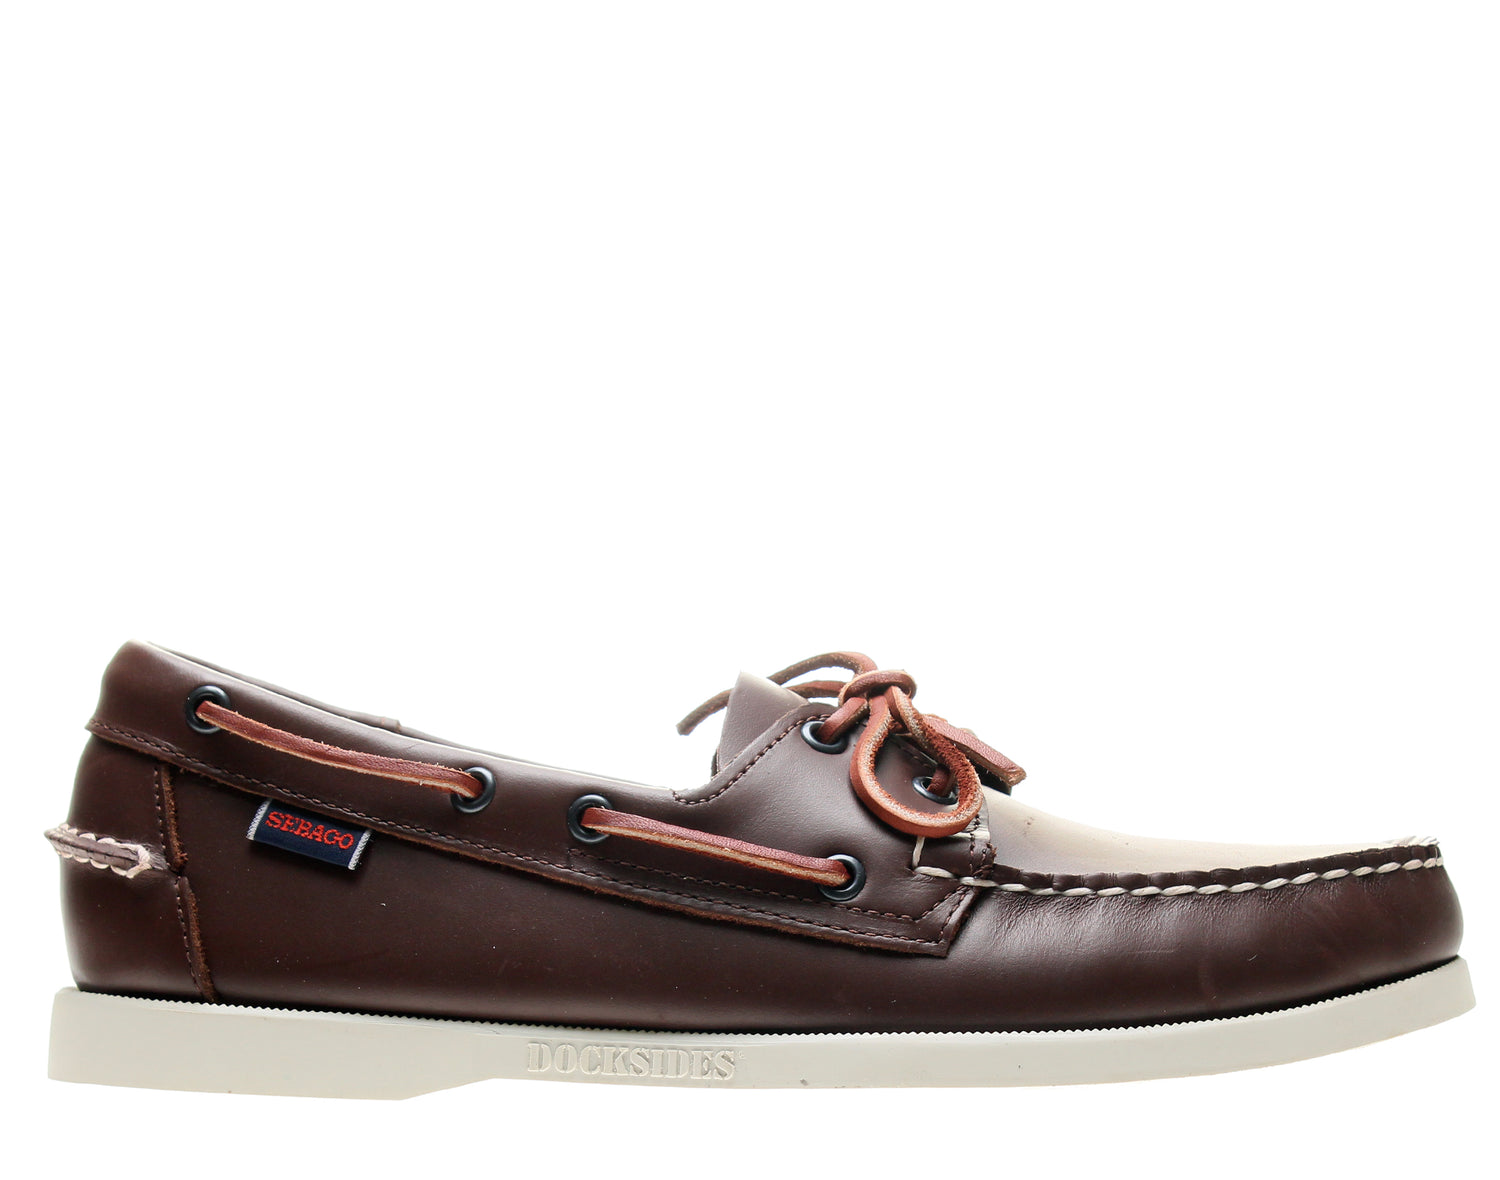 Sebago Docksides Men's Boat Shoes